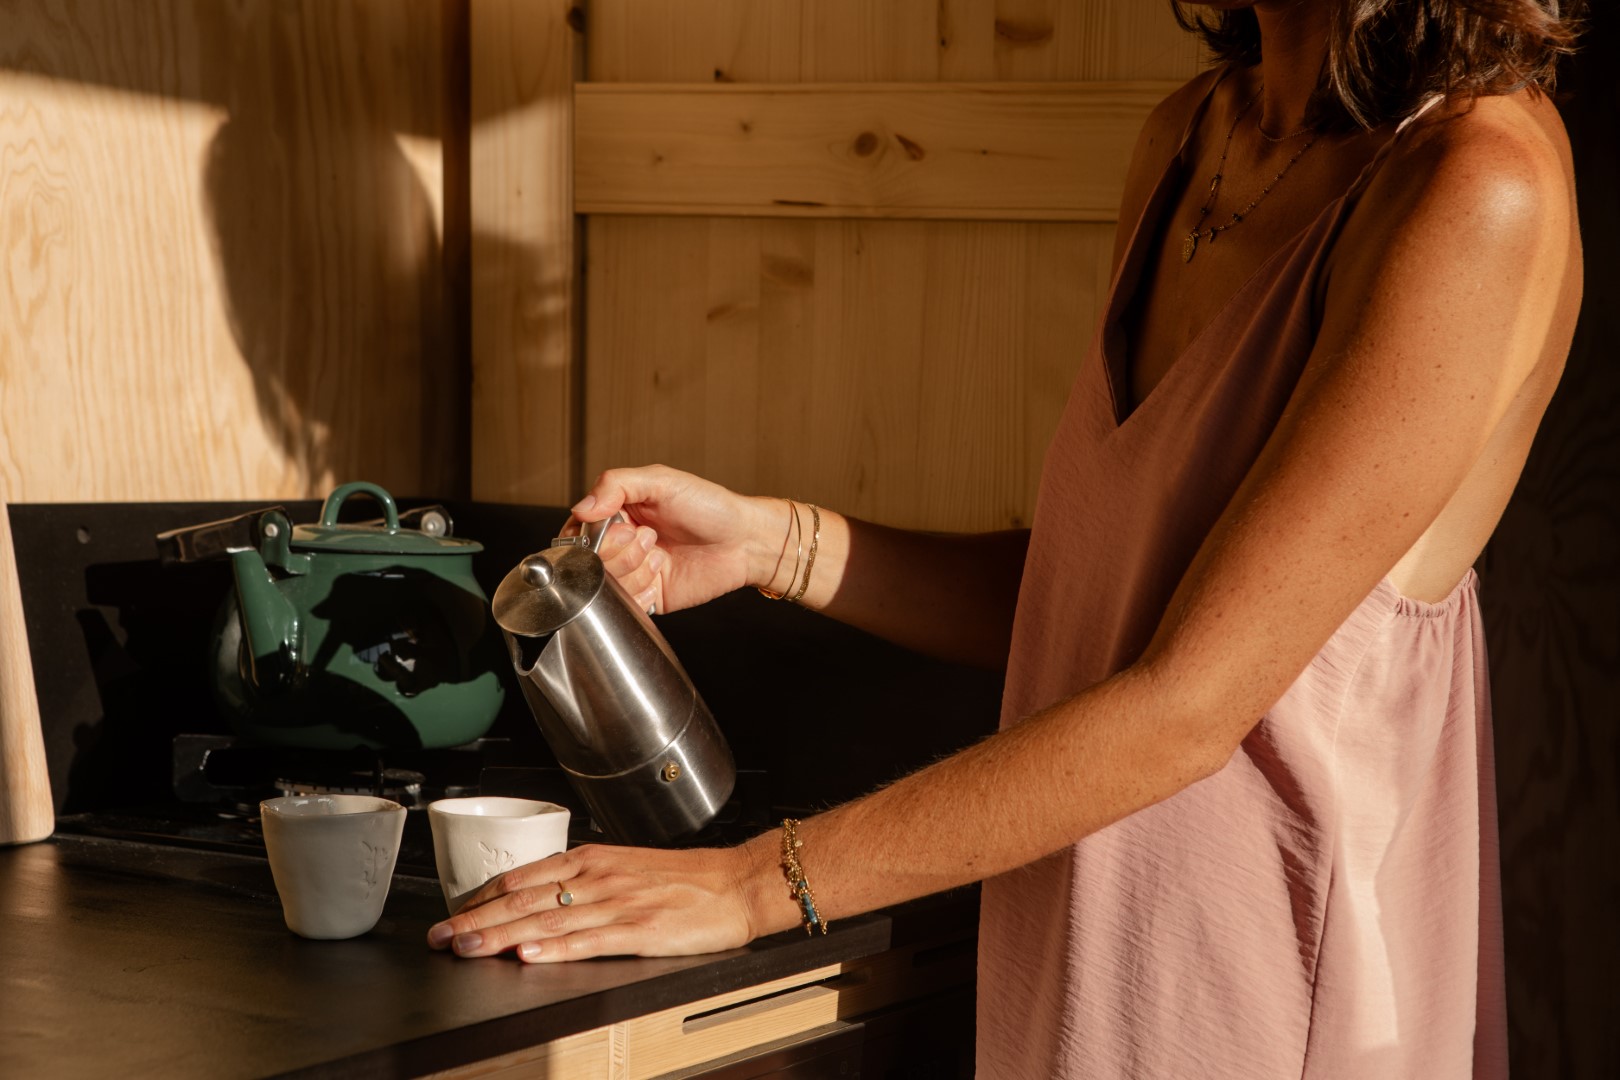 Une femme se sert un thé dans une tiny house